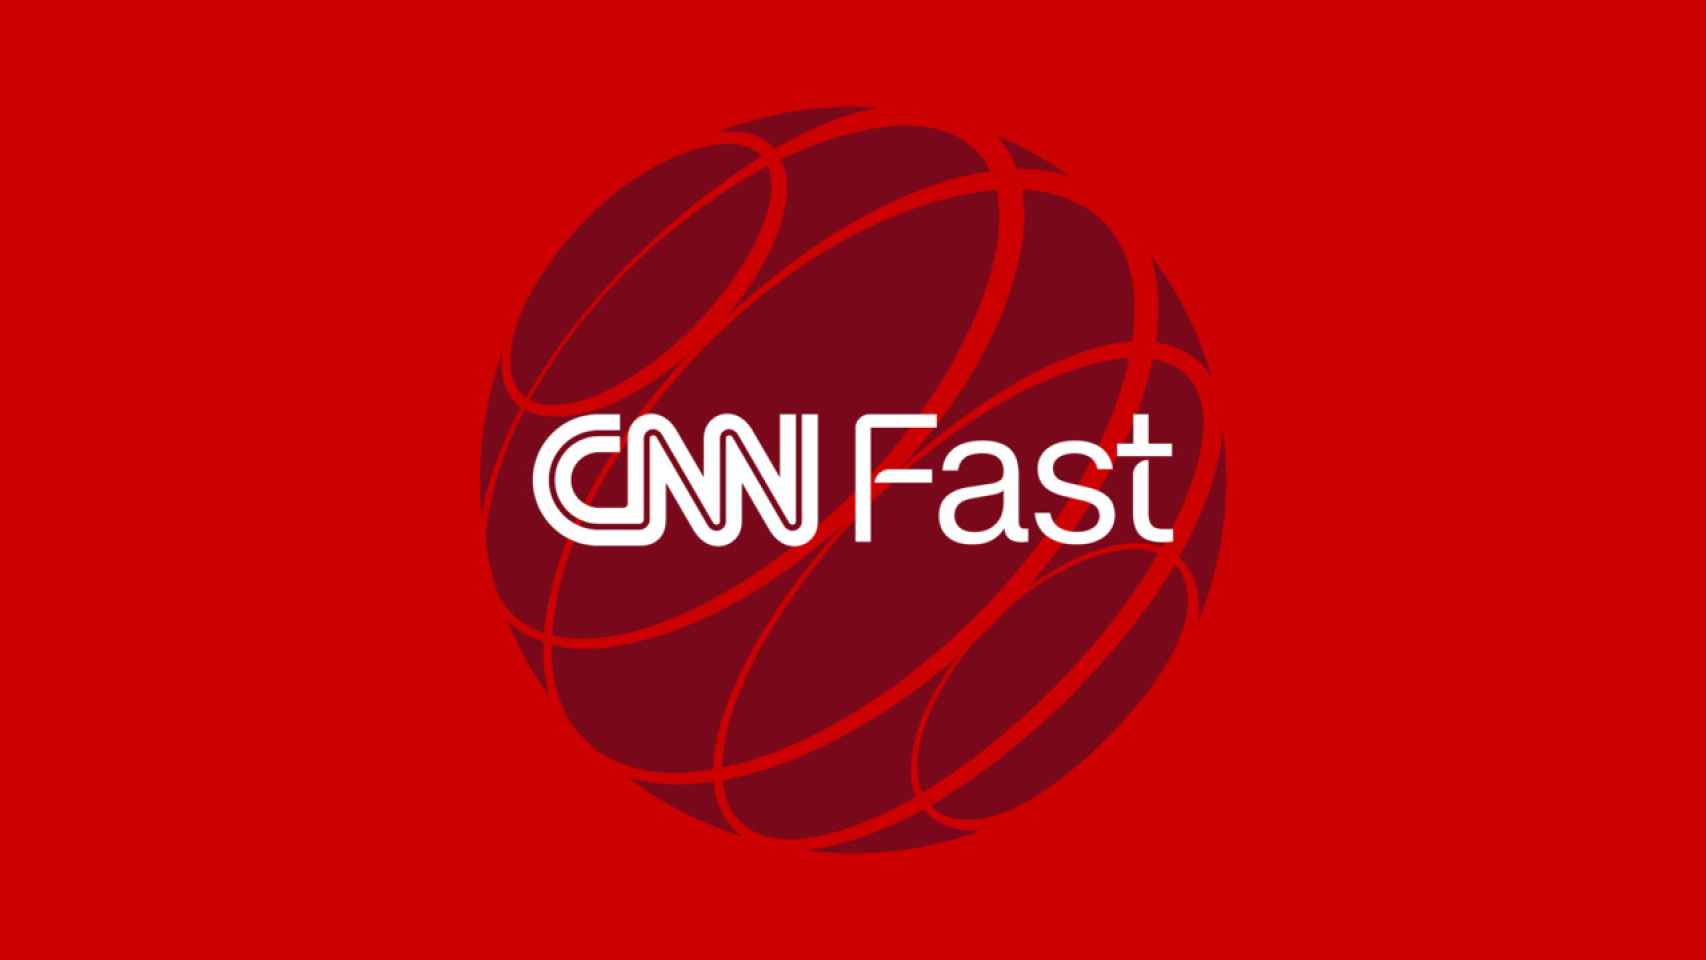 CNN Fast, el nuevo canal de CNN.